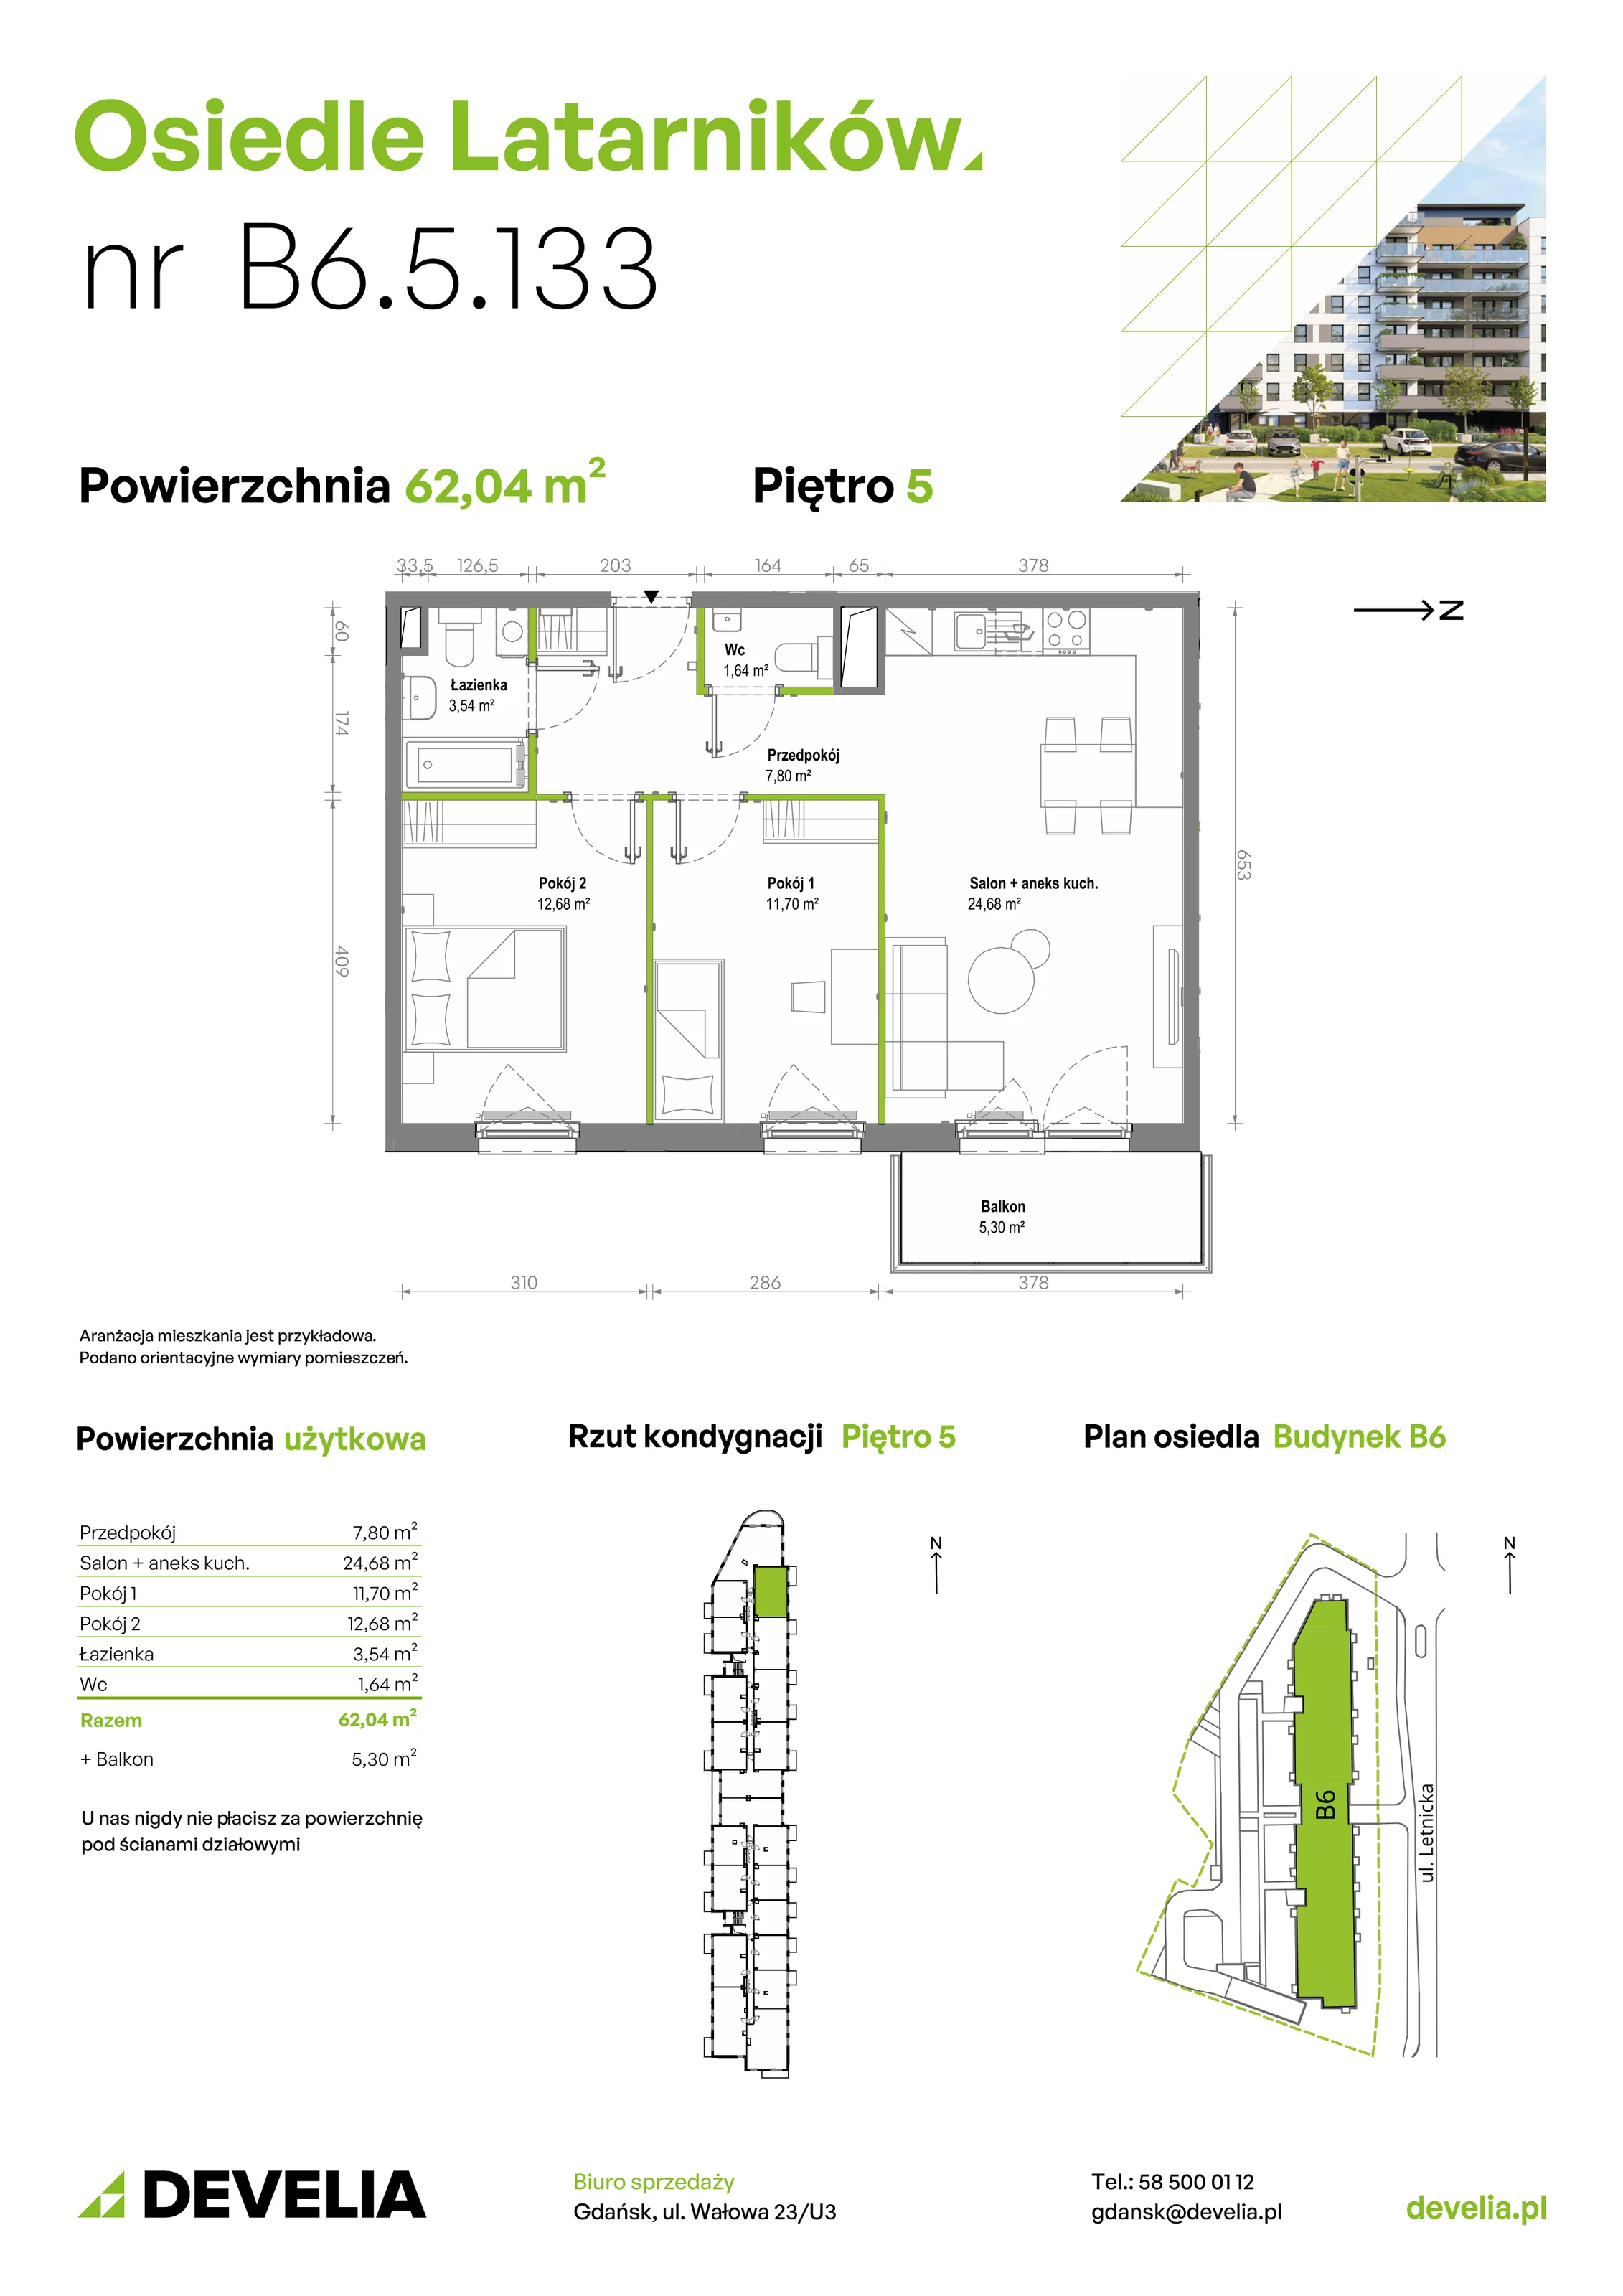 Mieszkanie 62,03 m², piętro 5, oferta nr B6.5.133, Osiedle Latarników, Gdańsk, Letnica, ul. Letnicka 1